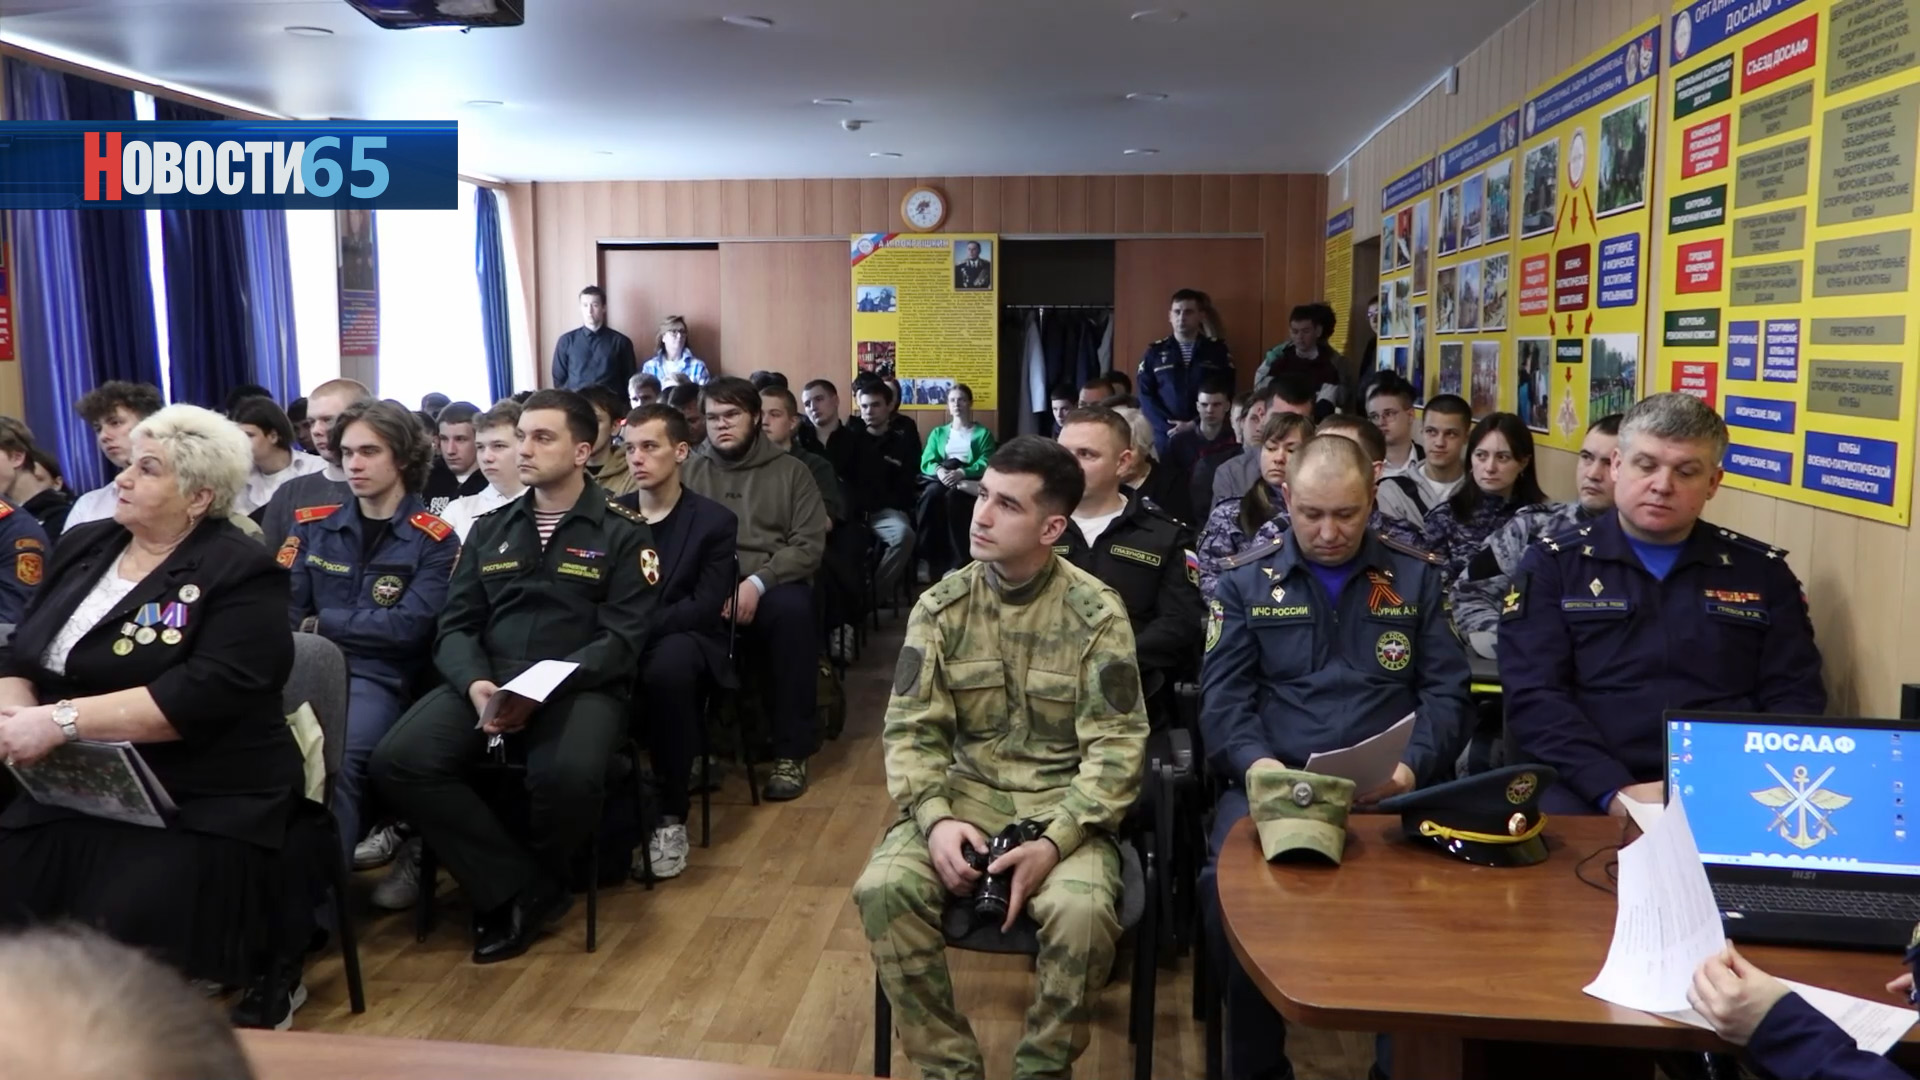 Военно-патриотическое мероприятие. День призывника состоялся в Южно-Сахалинске